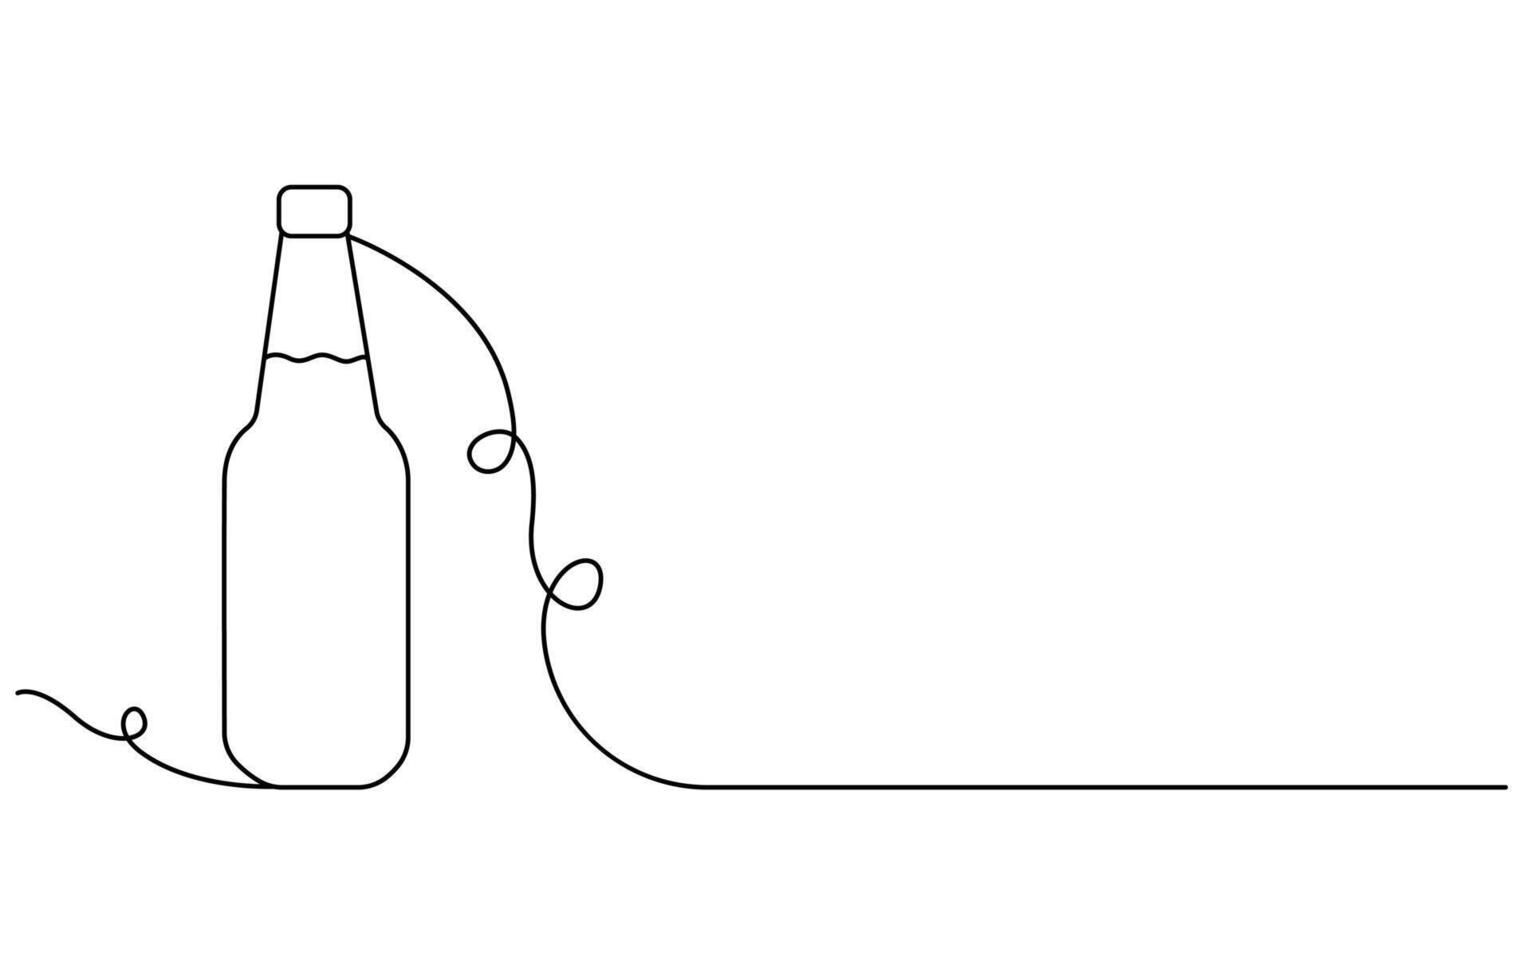 Internationale bier dag glas en fles doorlopend een lijn tekening vector